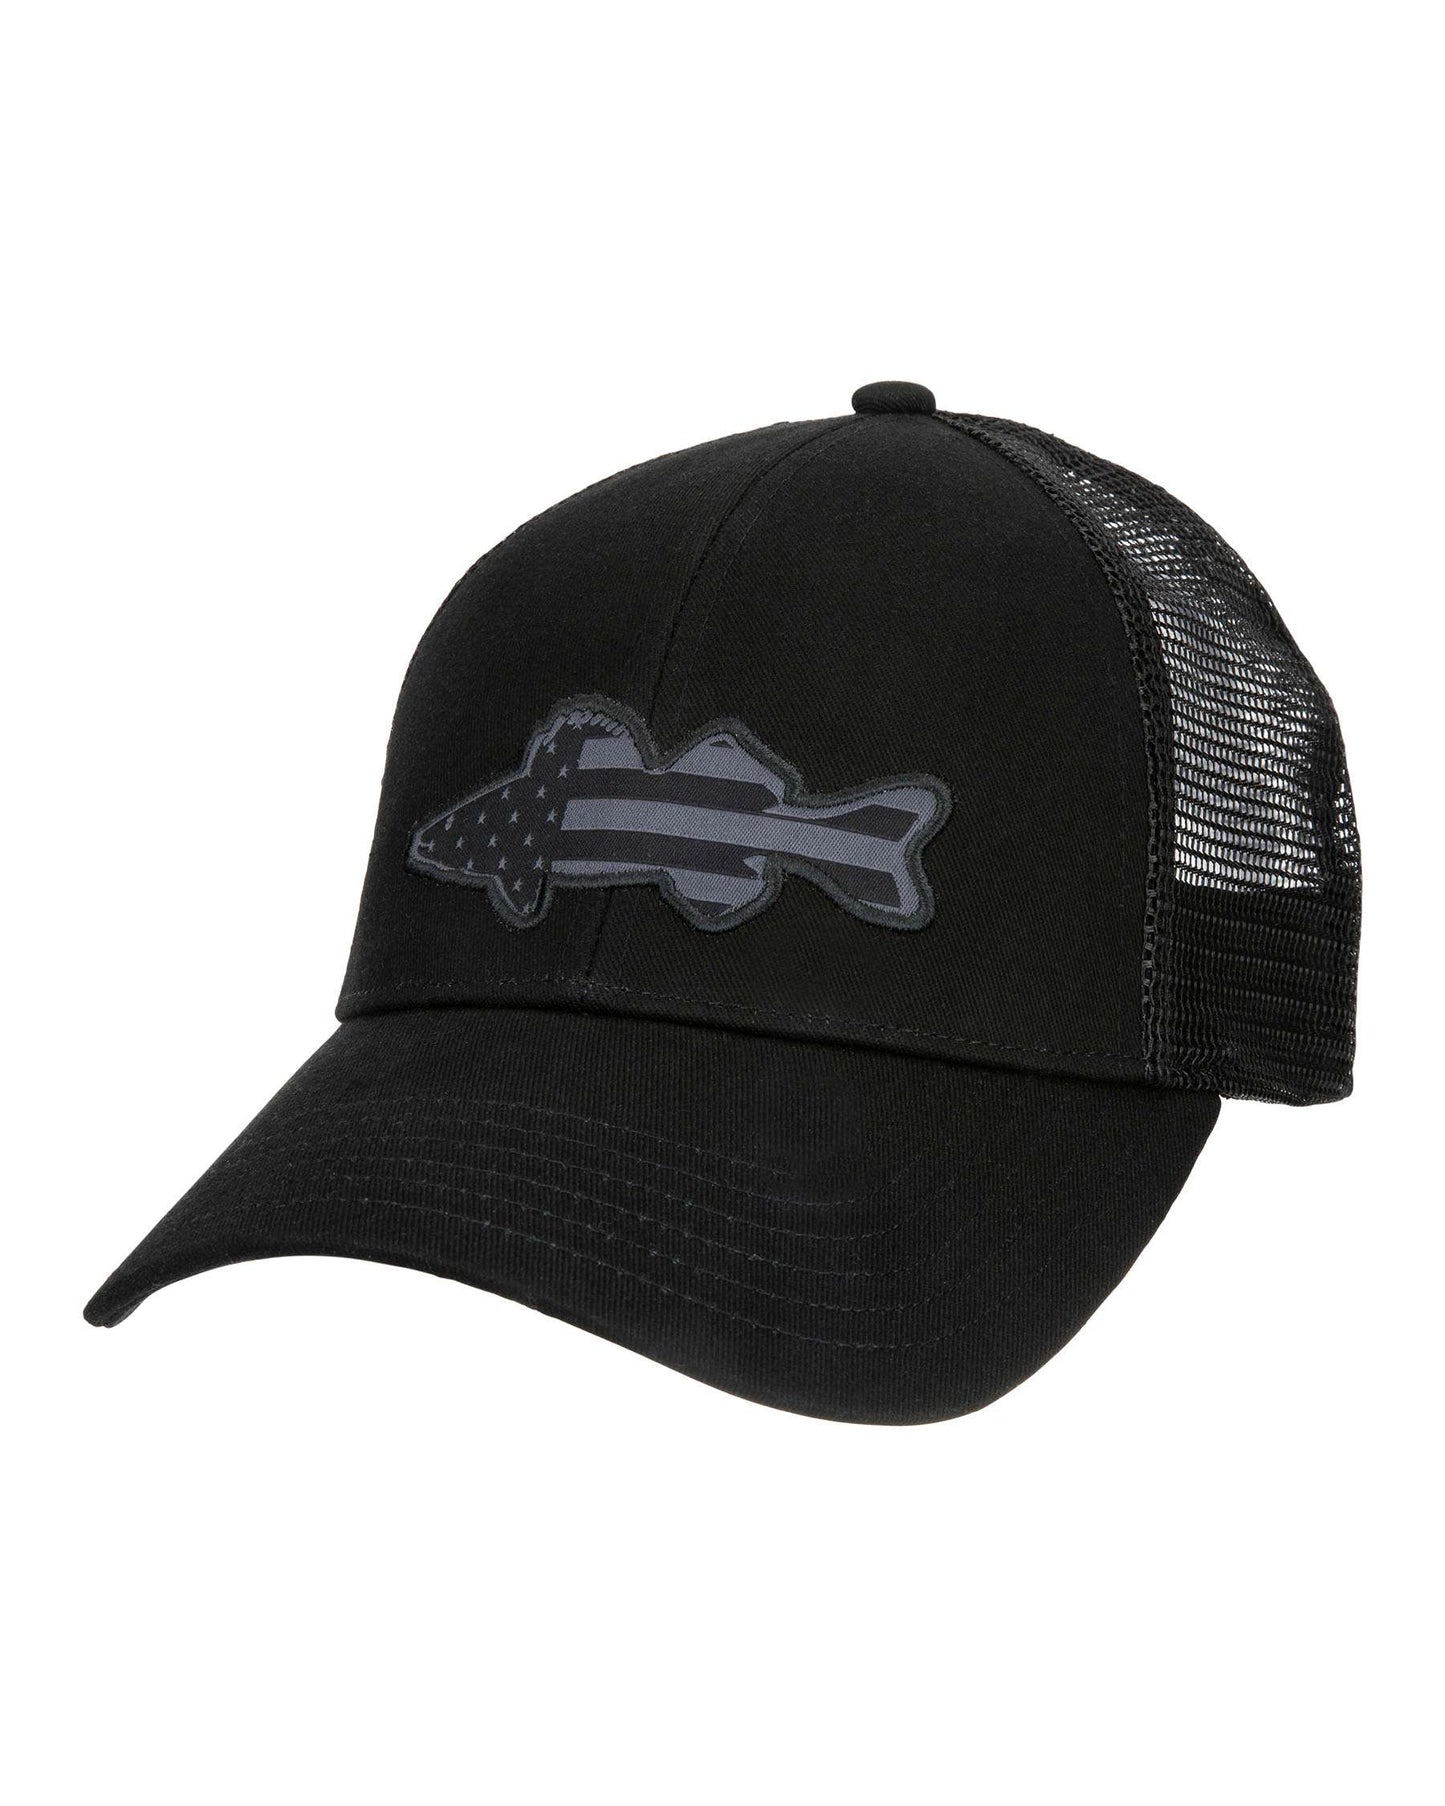 M's USA Walleye Trucker Hat - Black